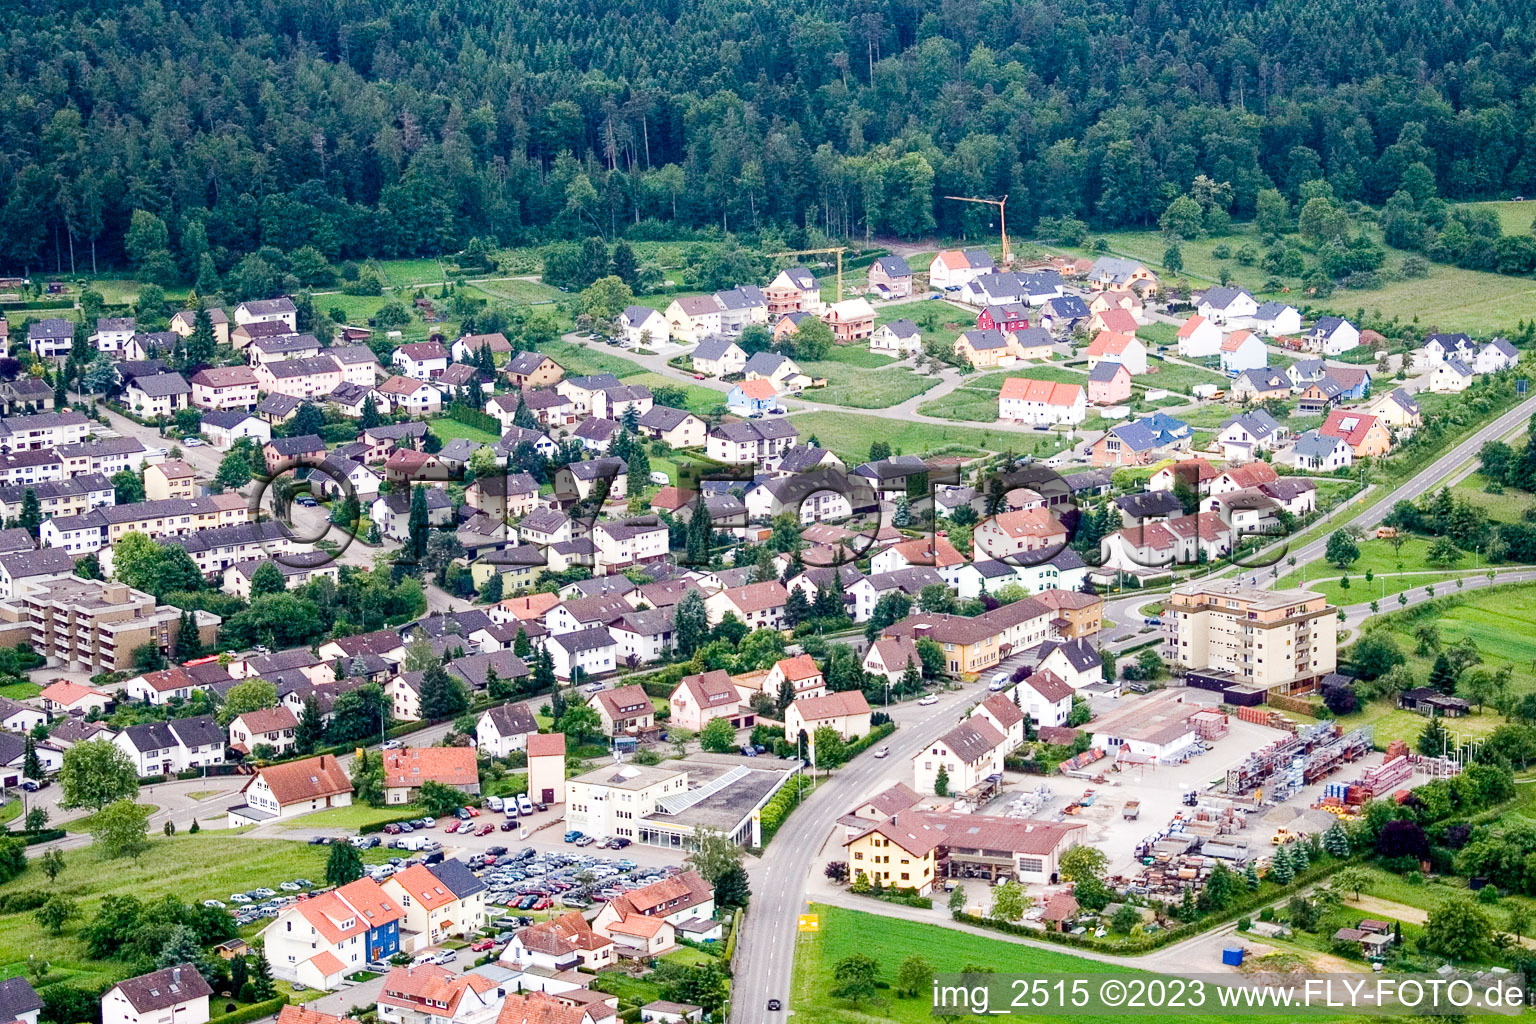 Birkenfeld dans le département Bade-Wurtemberg, Allemagne vue d'en haut